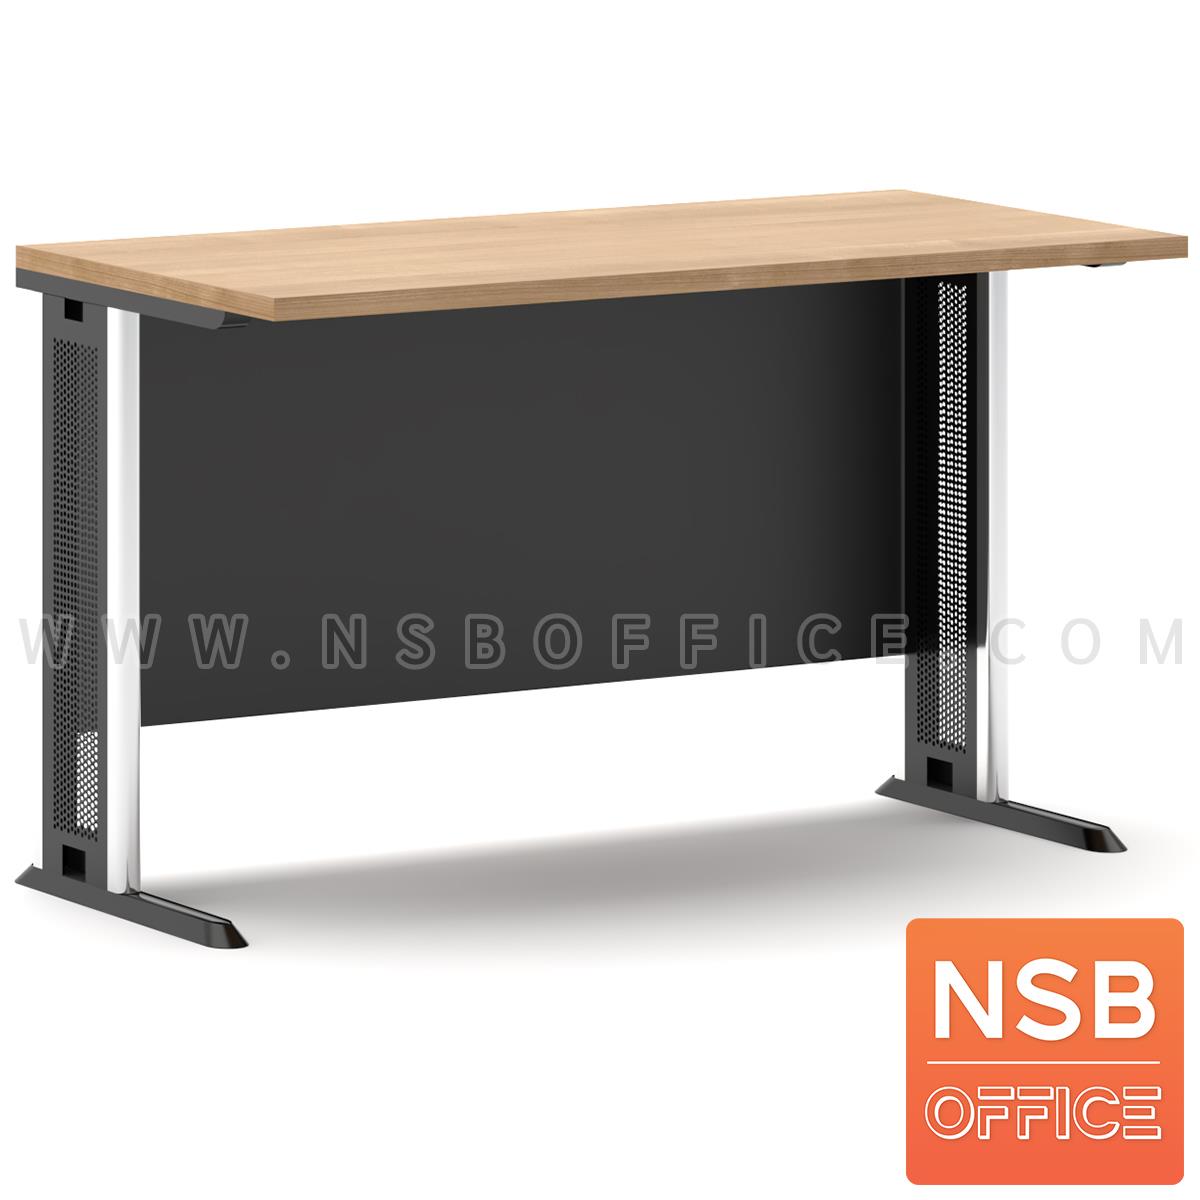 A10A046:โต๊ะทำงาน บังโป๊ไม้  ขนาด 80W-180W (60D, 75D, 80D) cm. ขาเหล็กตัวแอล